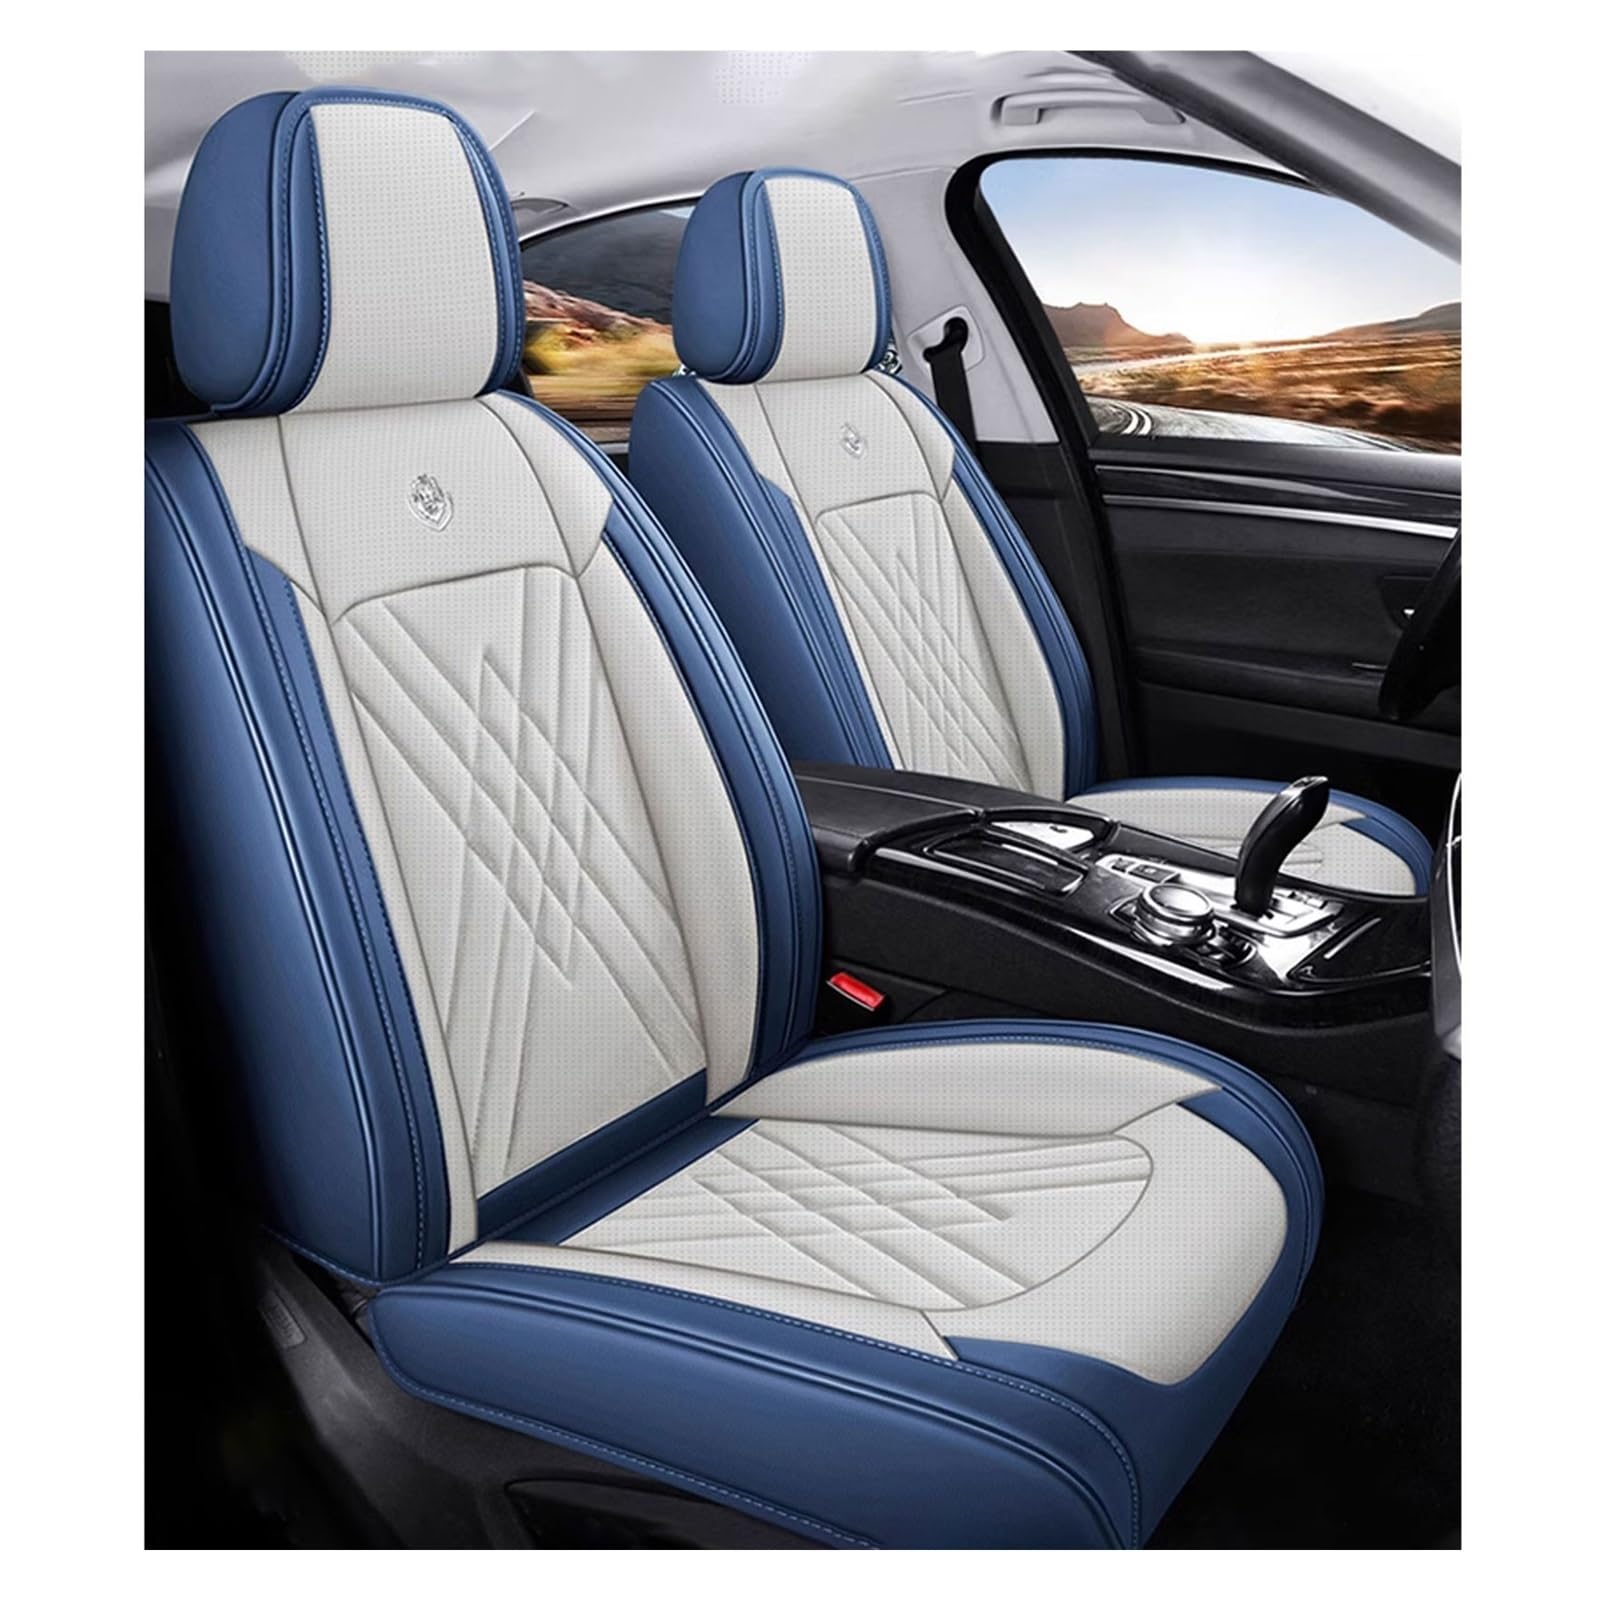 WEBOL Universal-Sitzbezug Komplett-Set Für Hyundai Equus, AutositzbezüGe Set Leder, 5-Sitze Universal-SitzbezüGe Auto Komplettset(A) von WEBOL